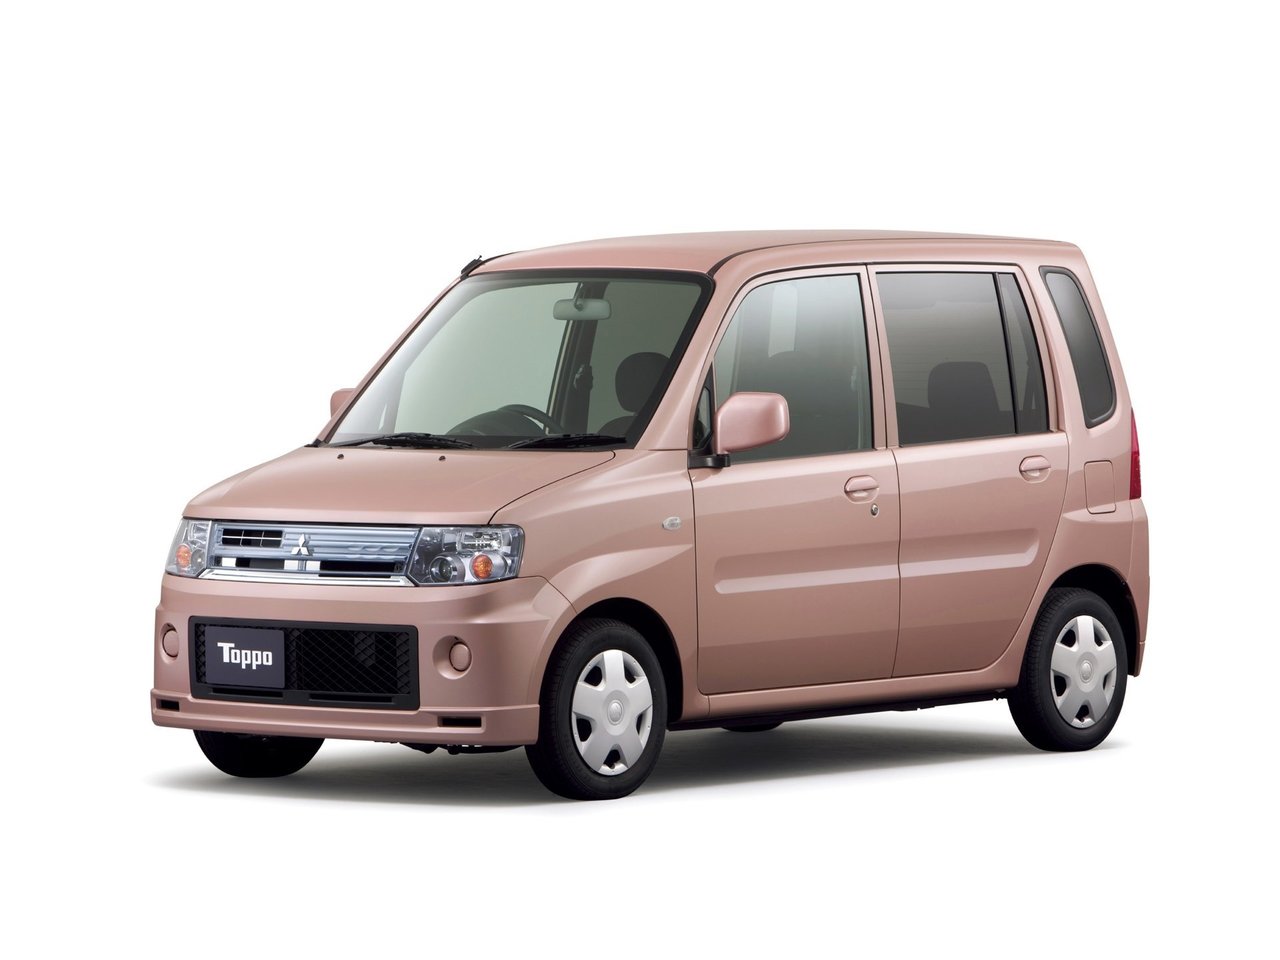 Расход газа одной комплектации хэтчбека пять дверей Mitsubishi Toppo. Разница стоимости заправки газом и бензином. Автономный пробег до и после установки ГБО.